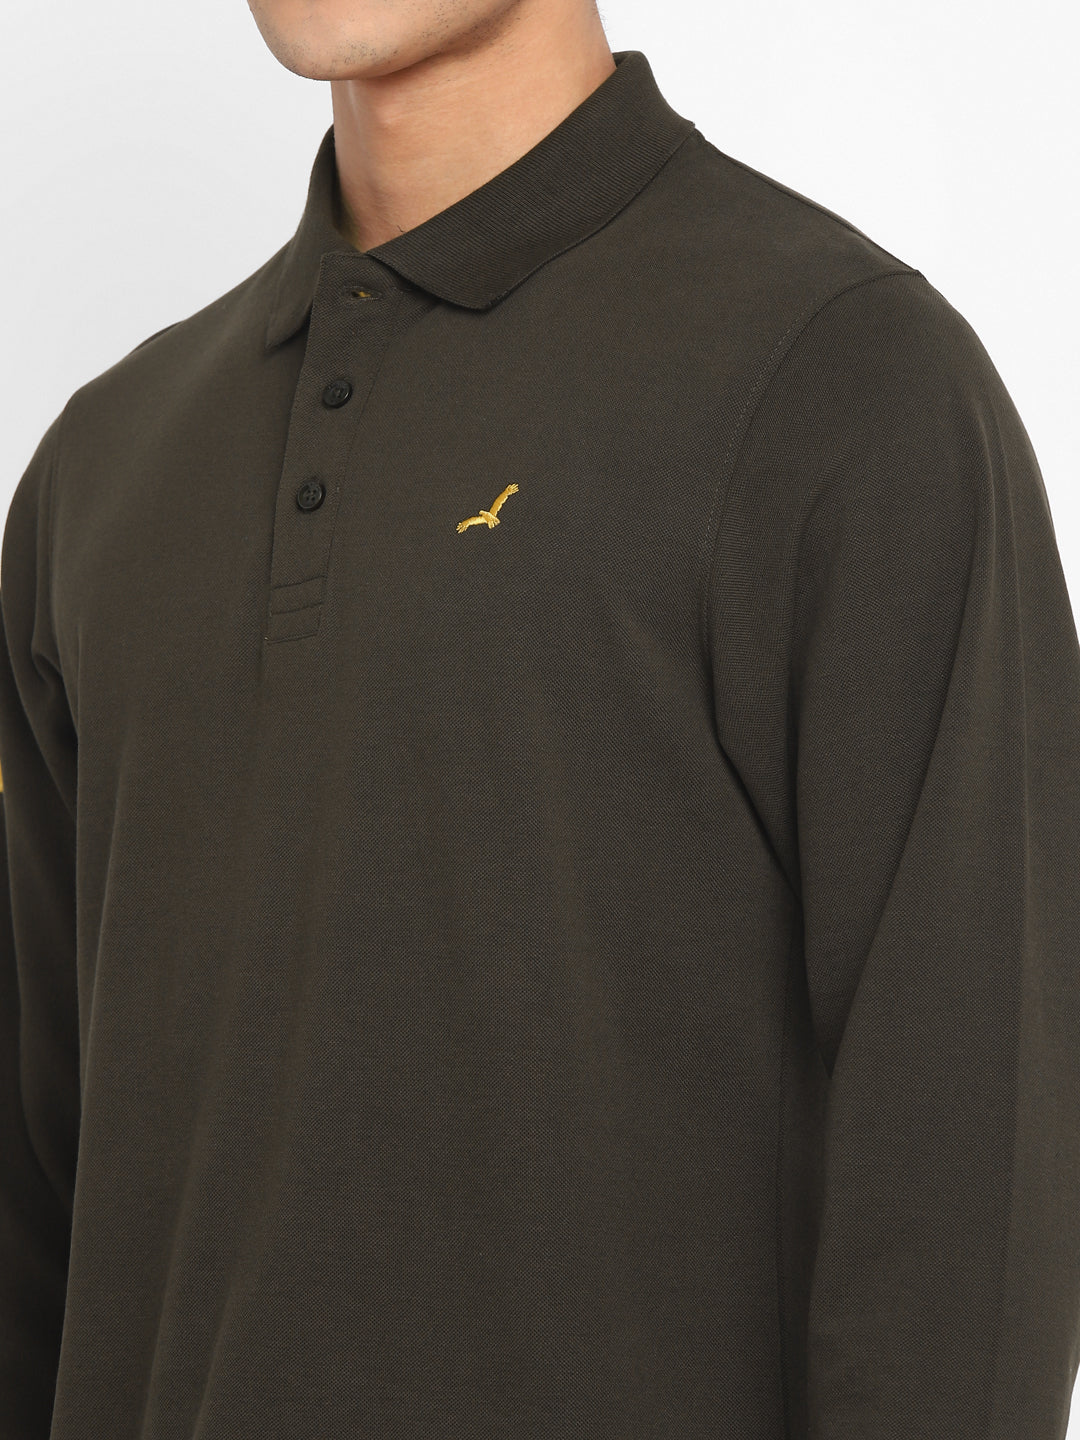 Full Sleeves Polo Collar T-Shirt for Men - Olive